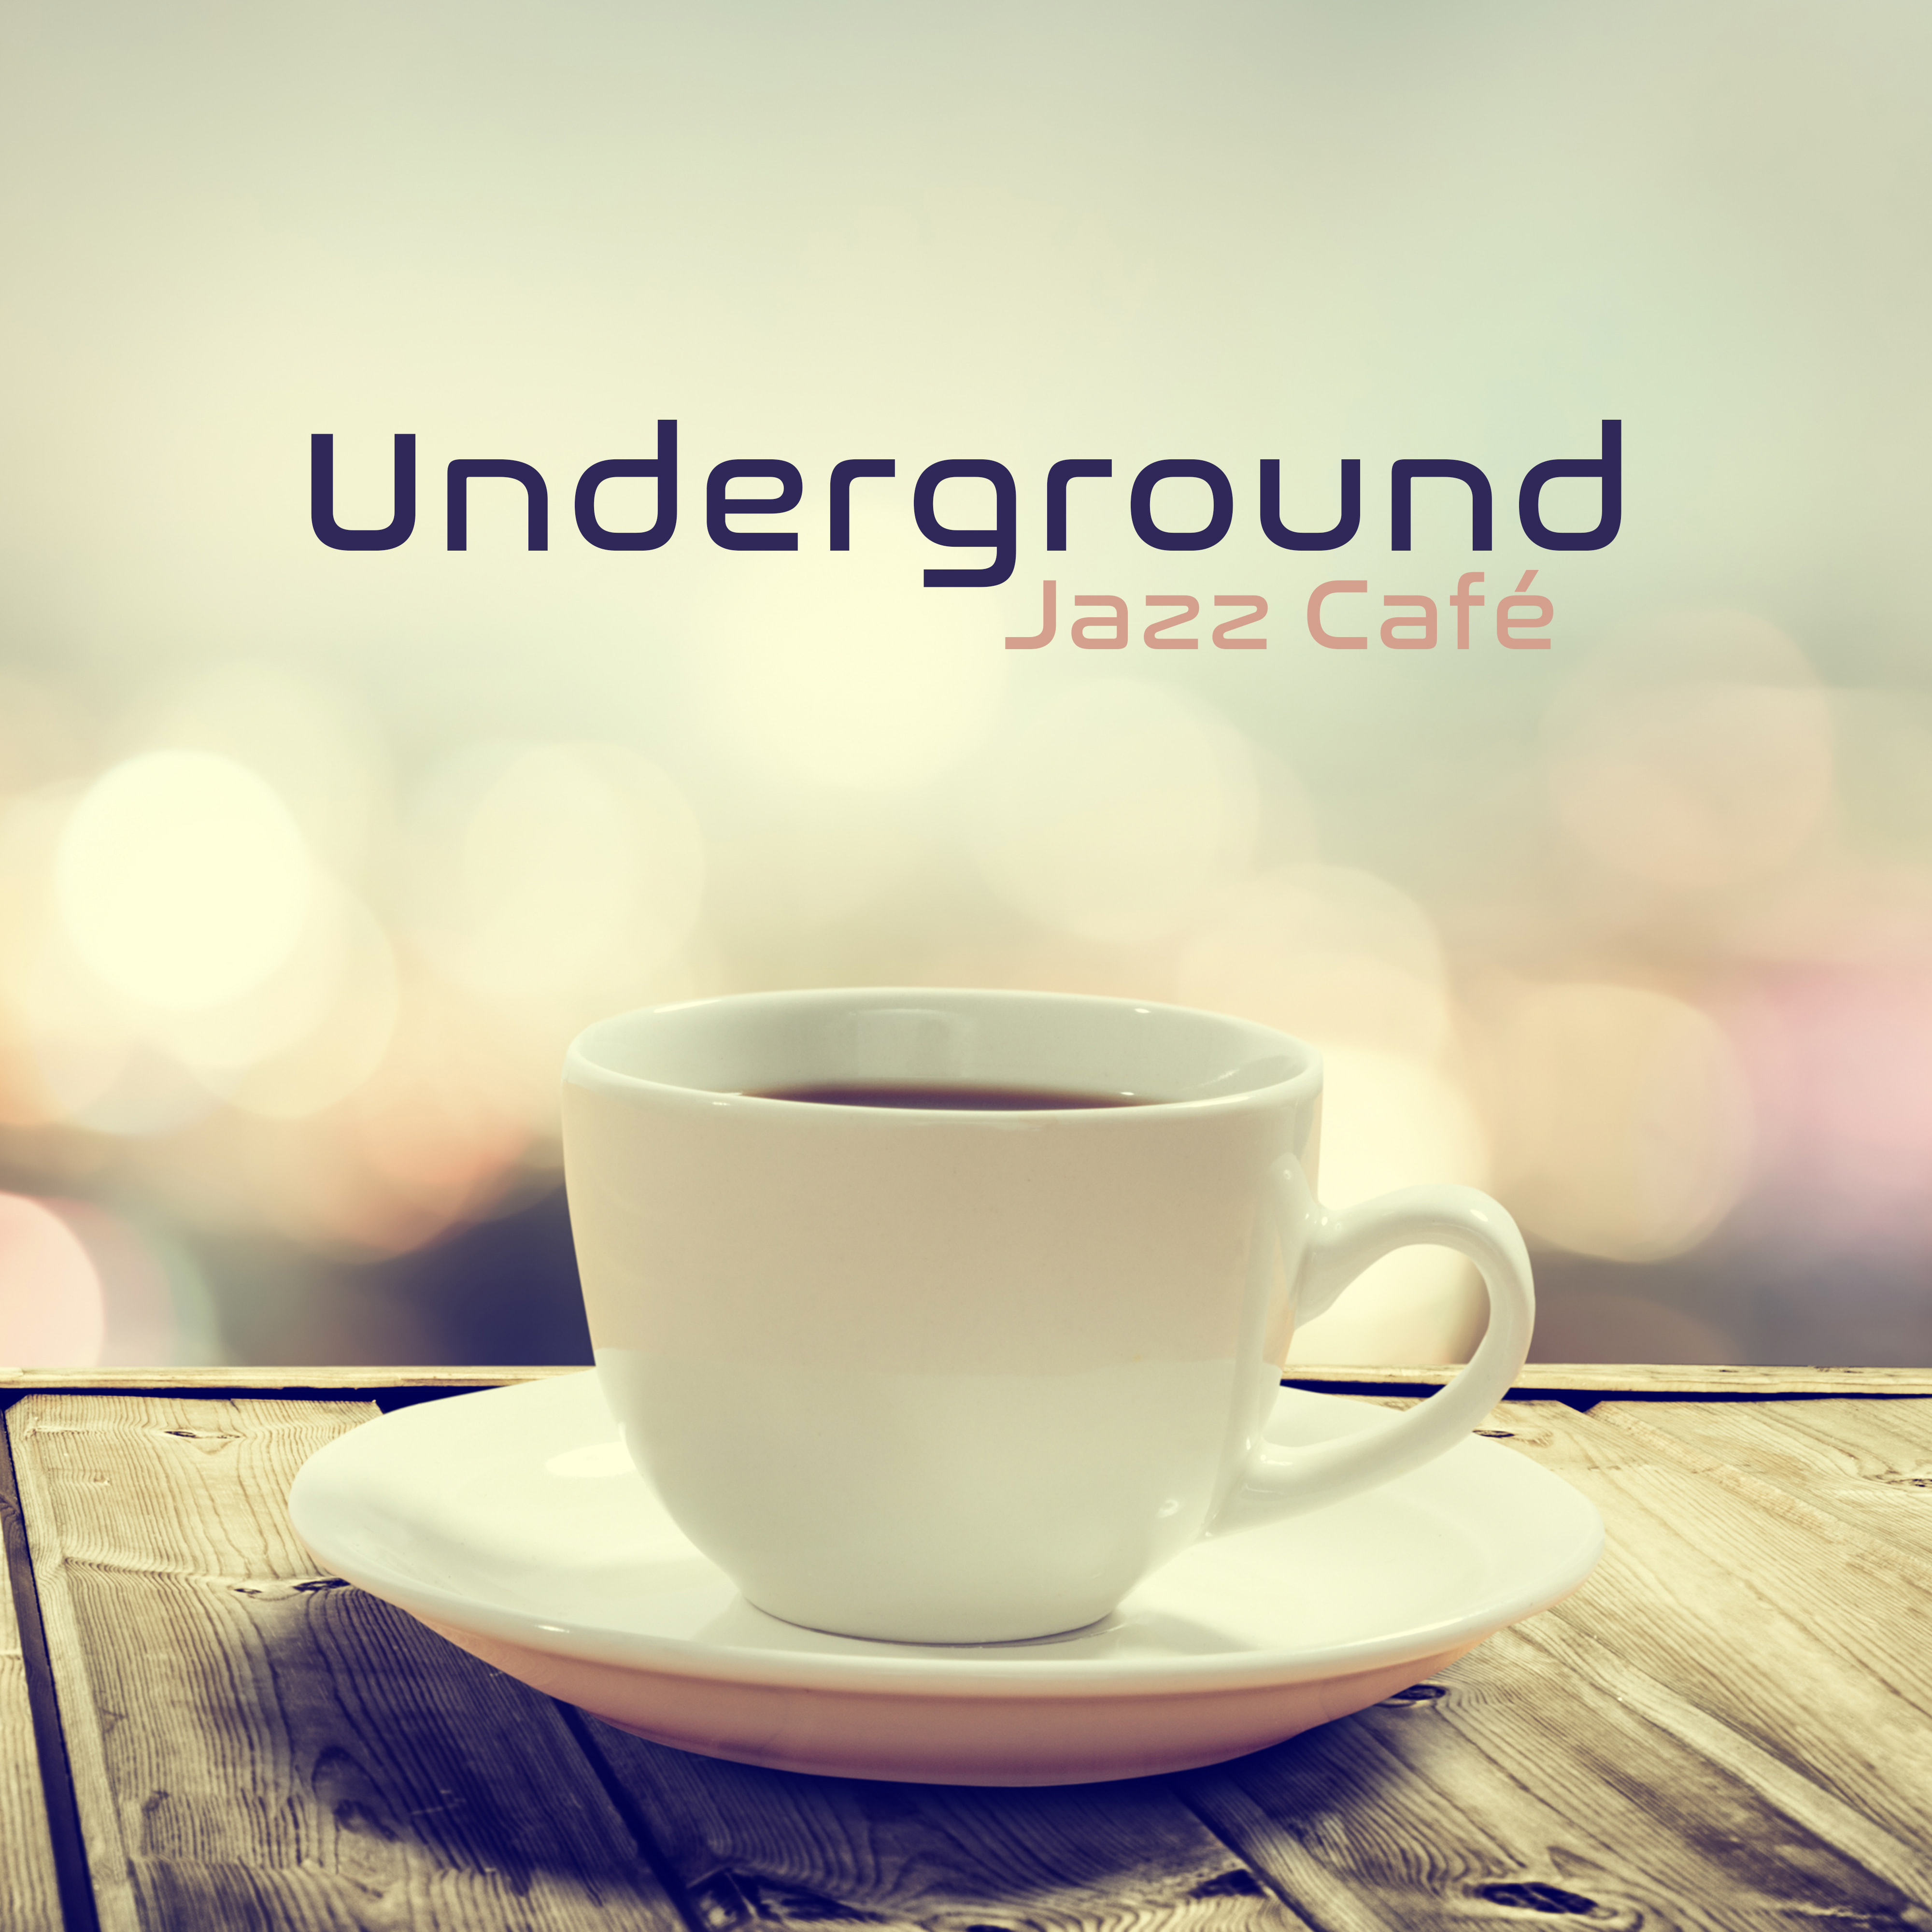 Underground Jazz Café